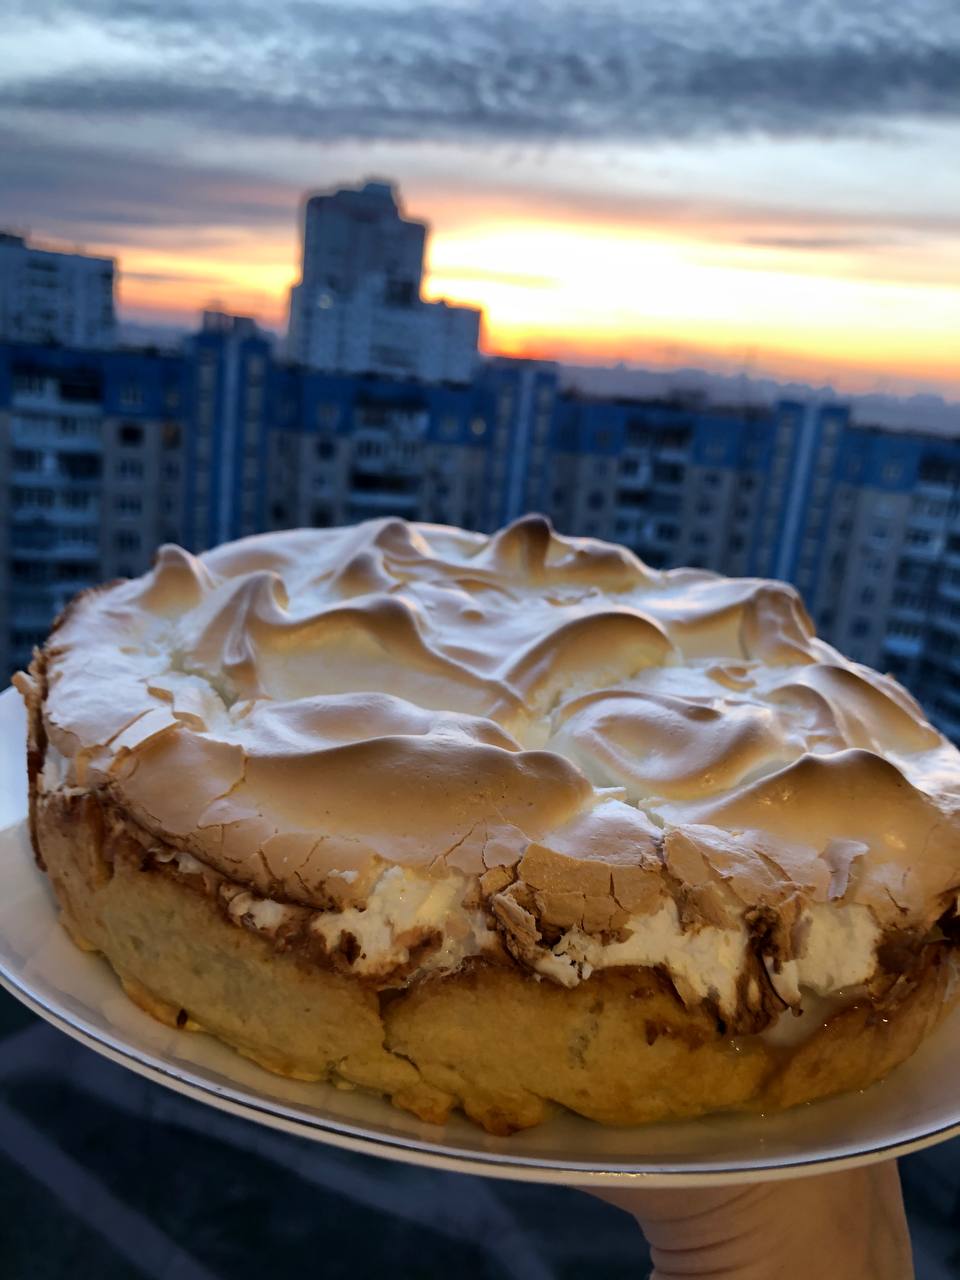 kake, kanskje sitronpai, ukrainsk storby i bakgrunnen